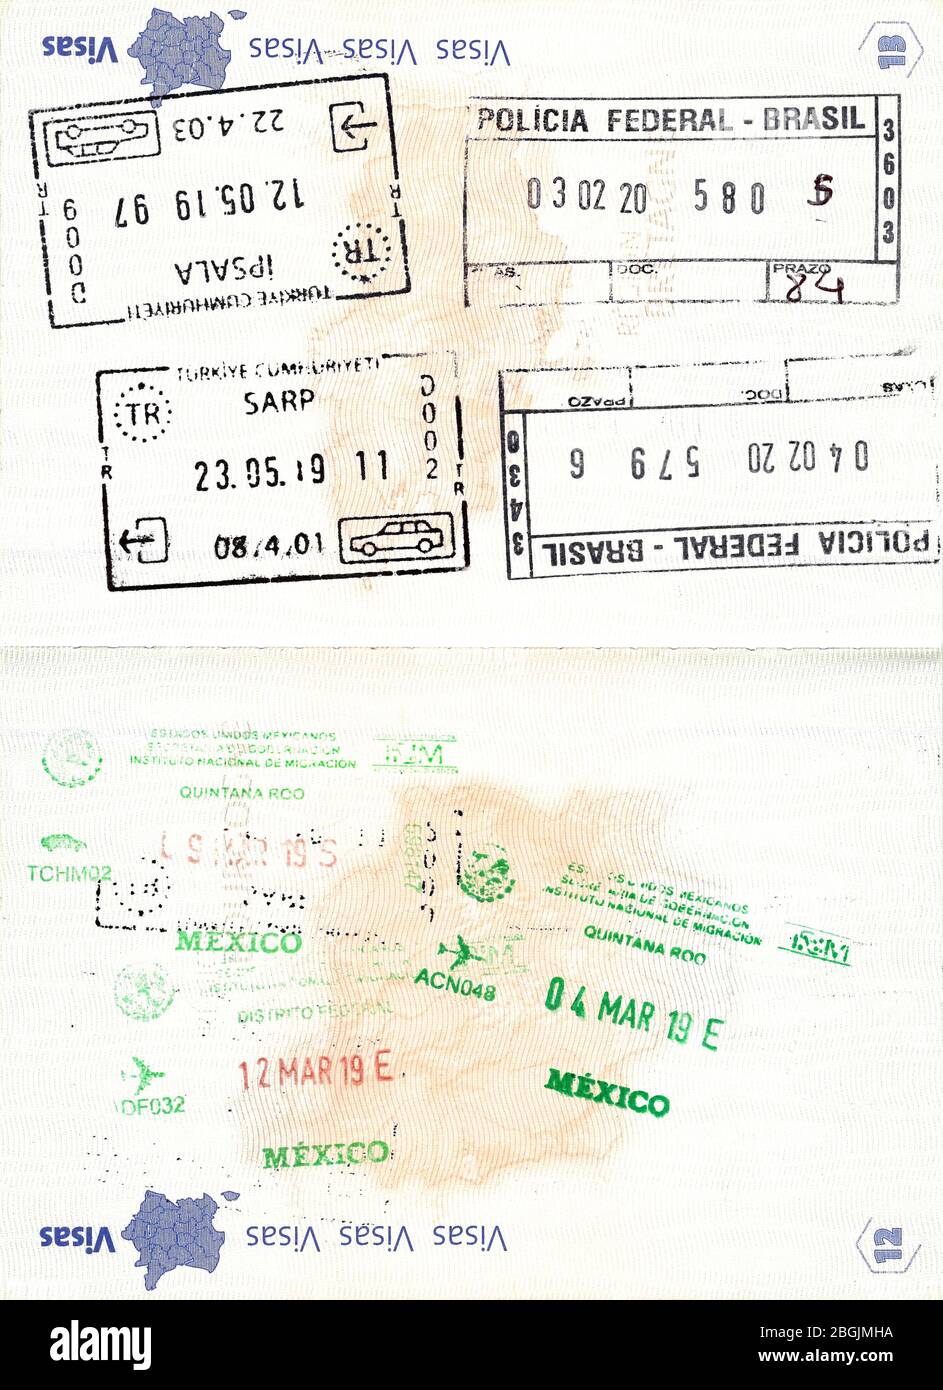 Sellos de pasaporte a brazil fotografías e imágenes de alta resolución -  Alamy